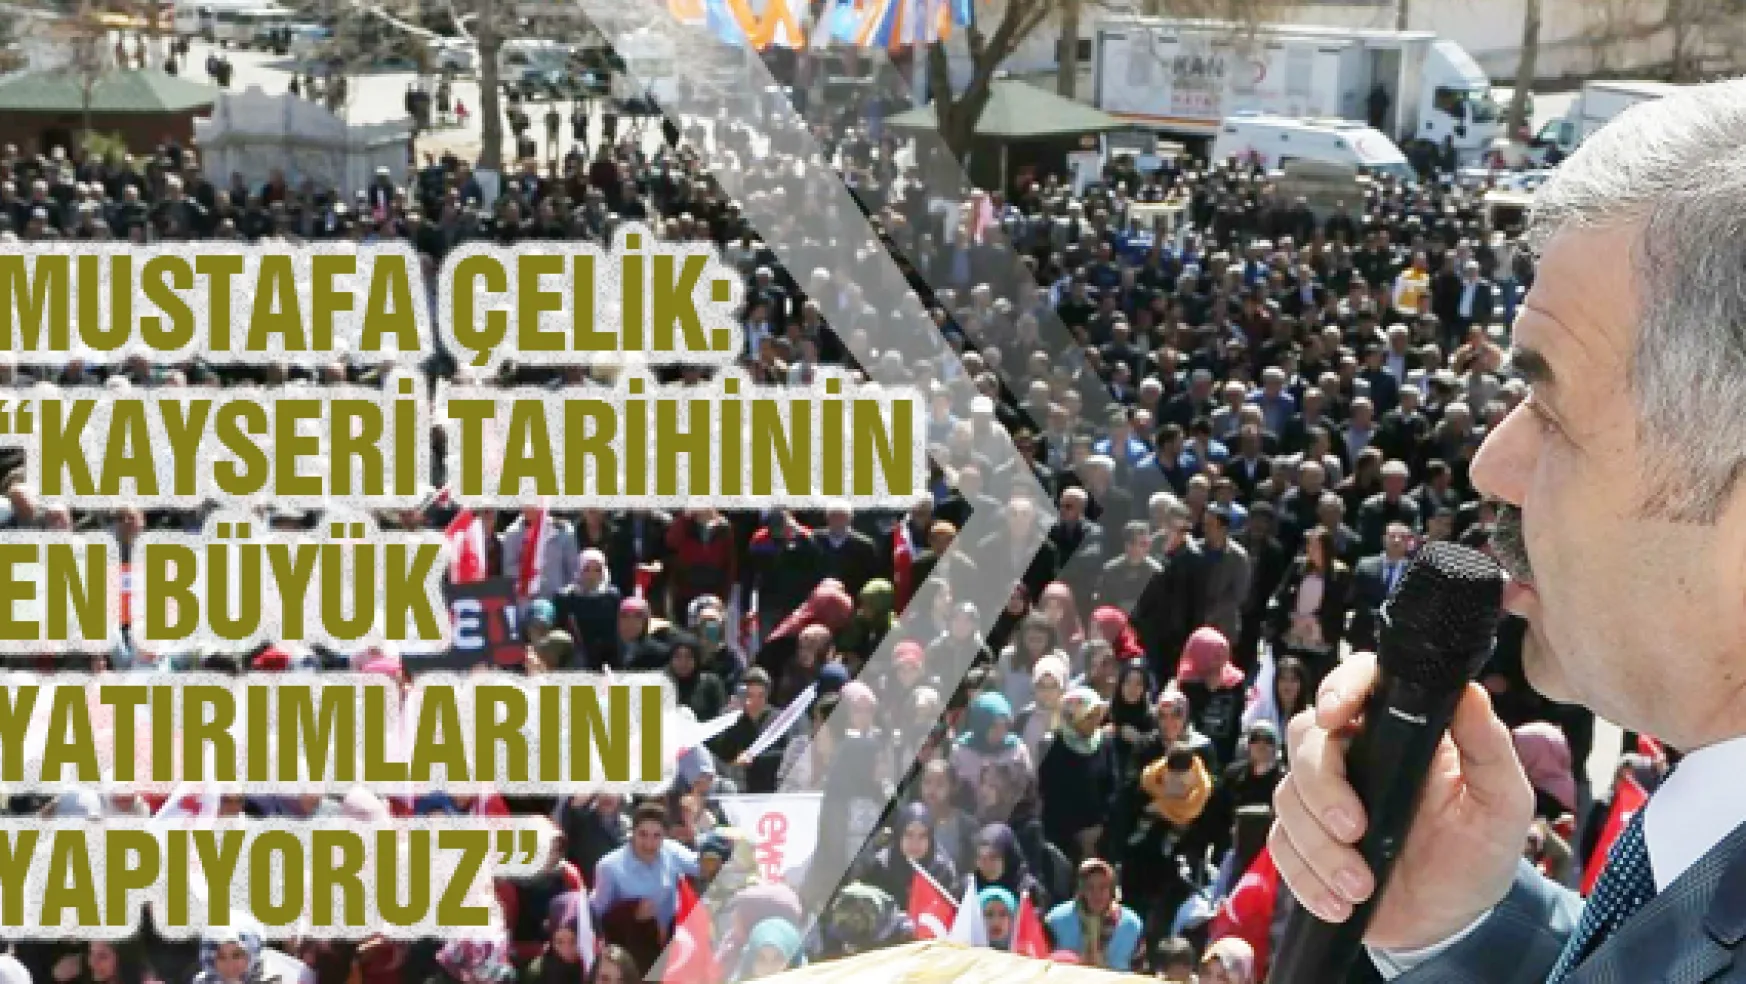 Mustafa Çelik: 'Kayseri tarihinin en büyük yatırımlarını yapıyoruz'